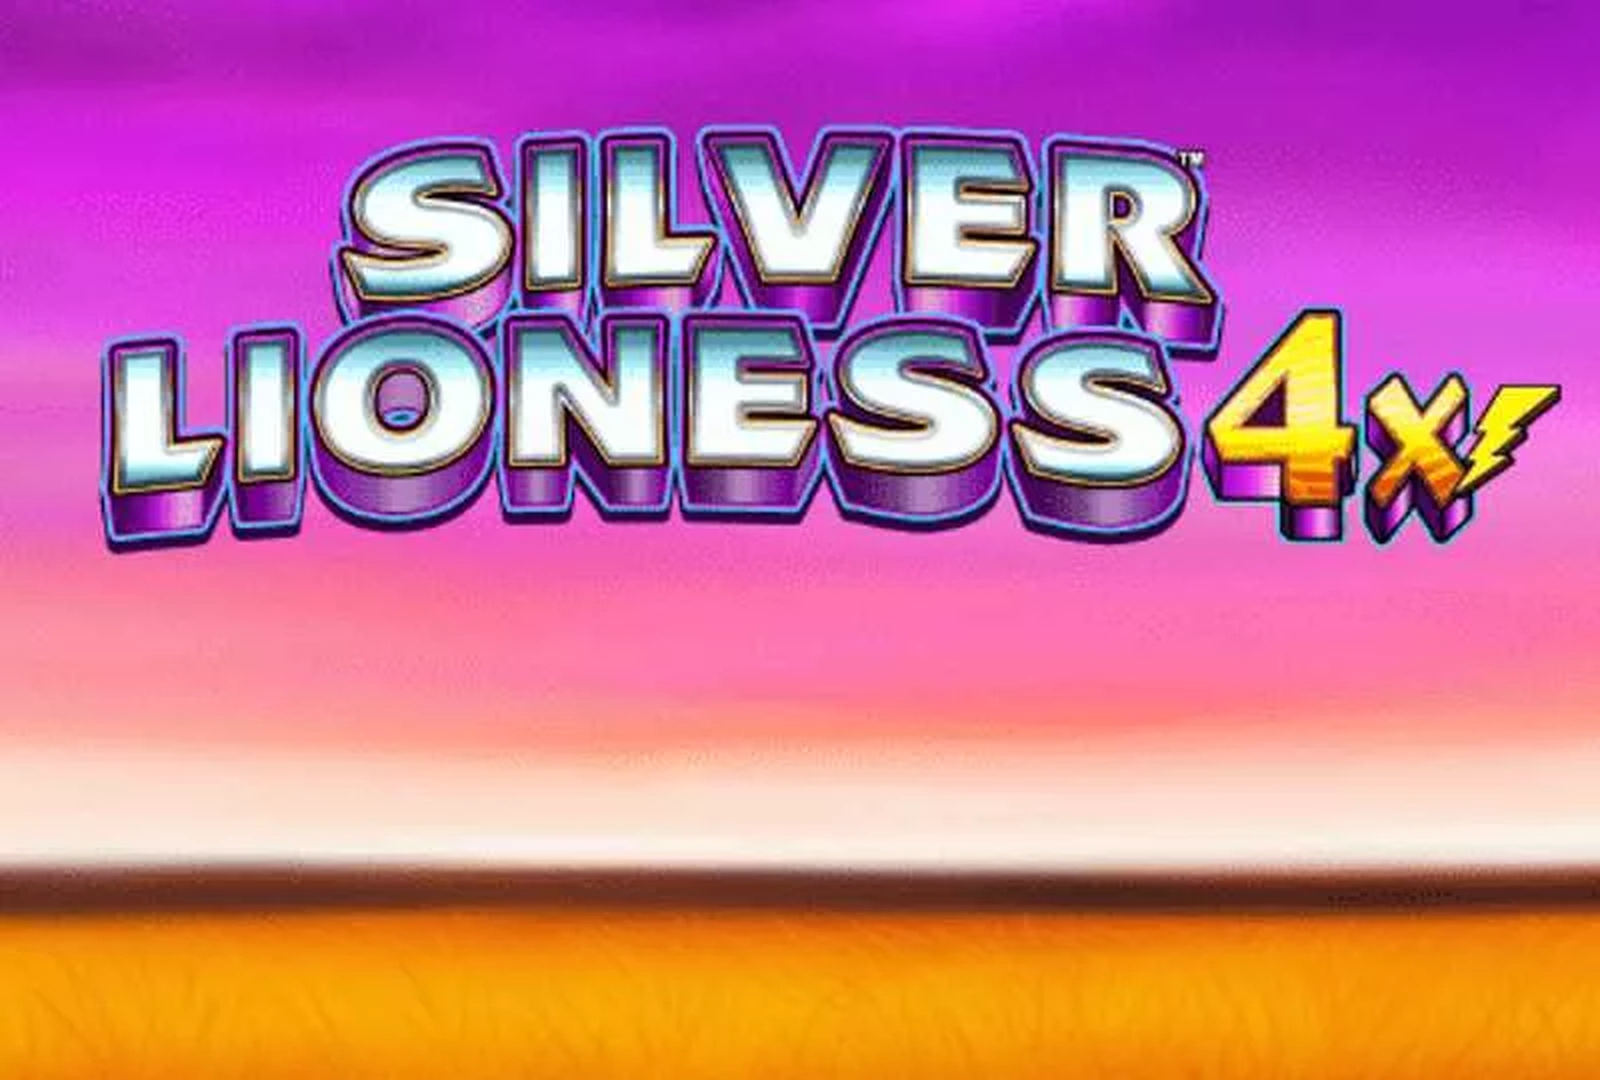 Silver Lioness 4x demo